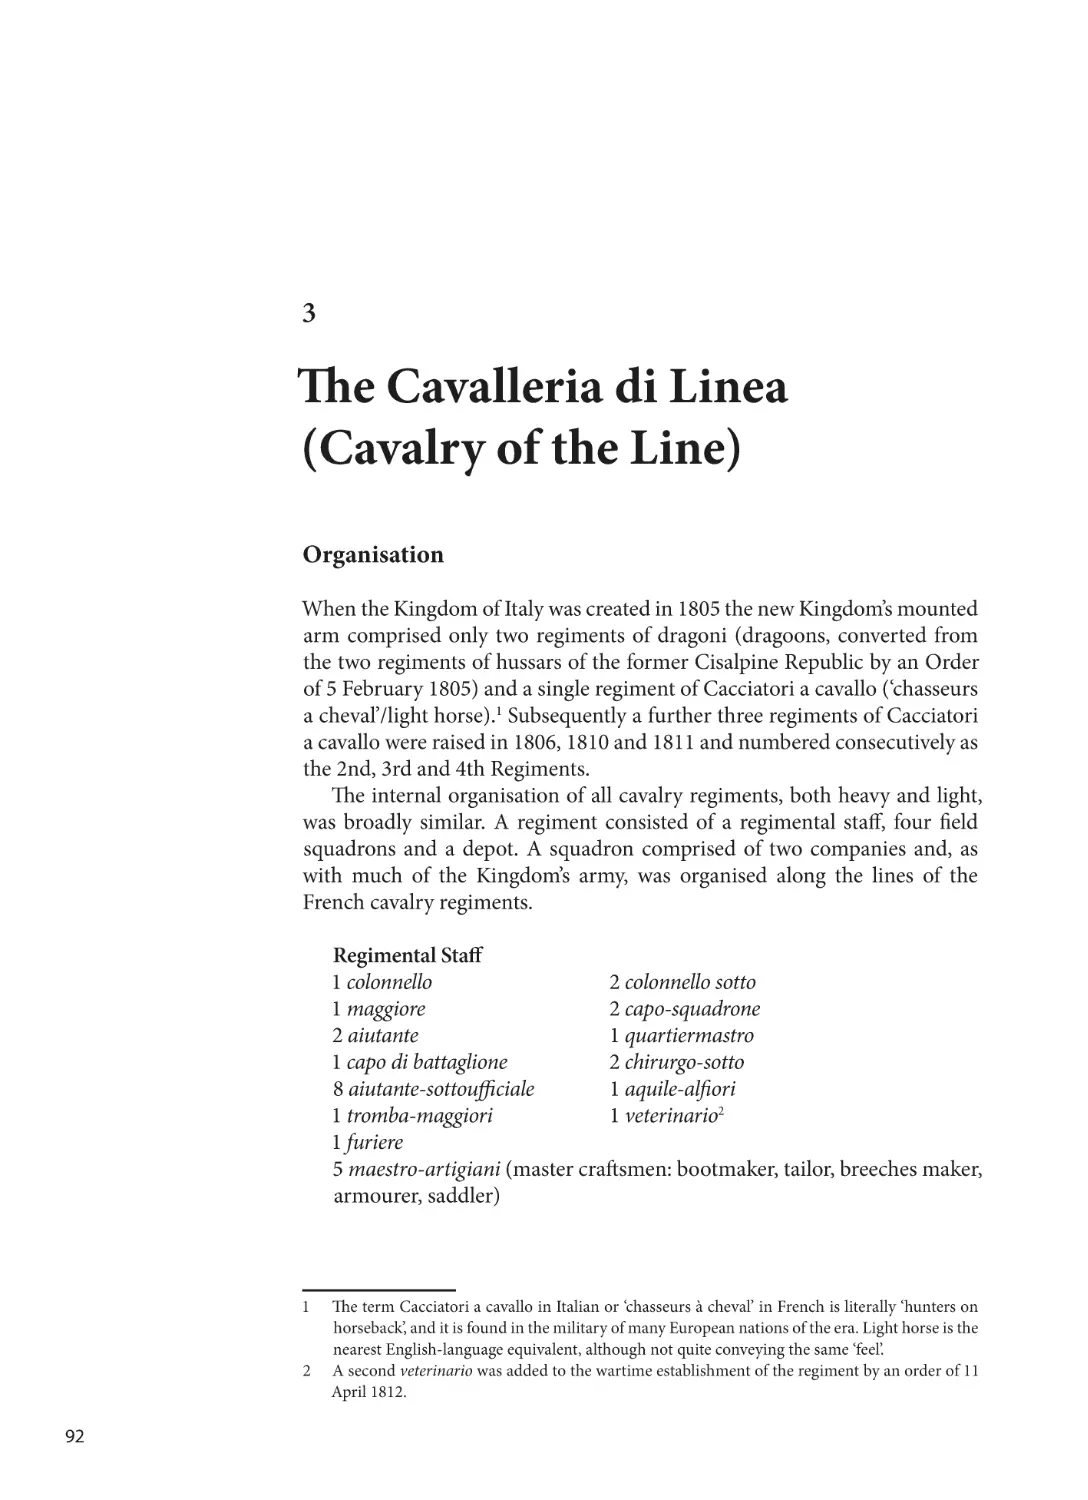 3. Cavalleria di Linea (Cavalry of the Line)